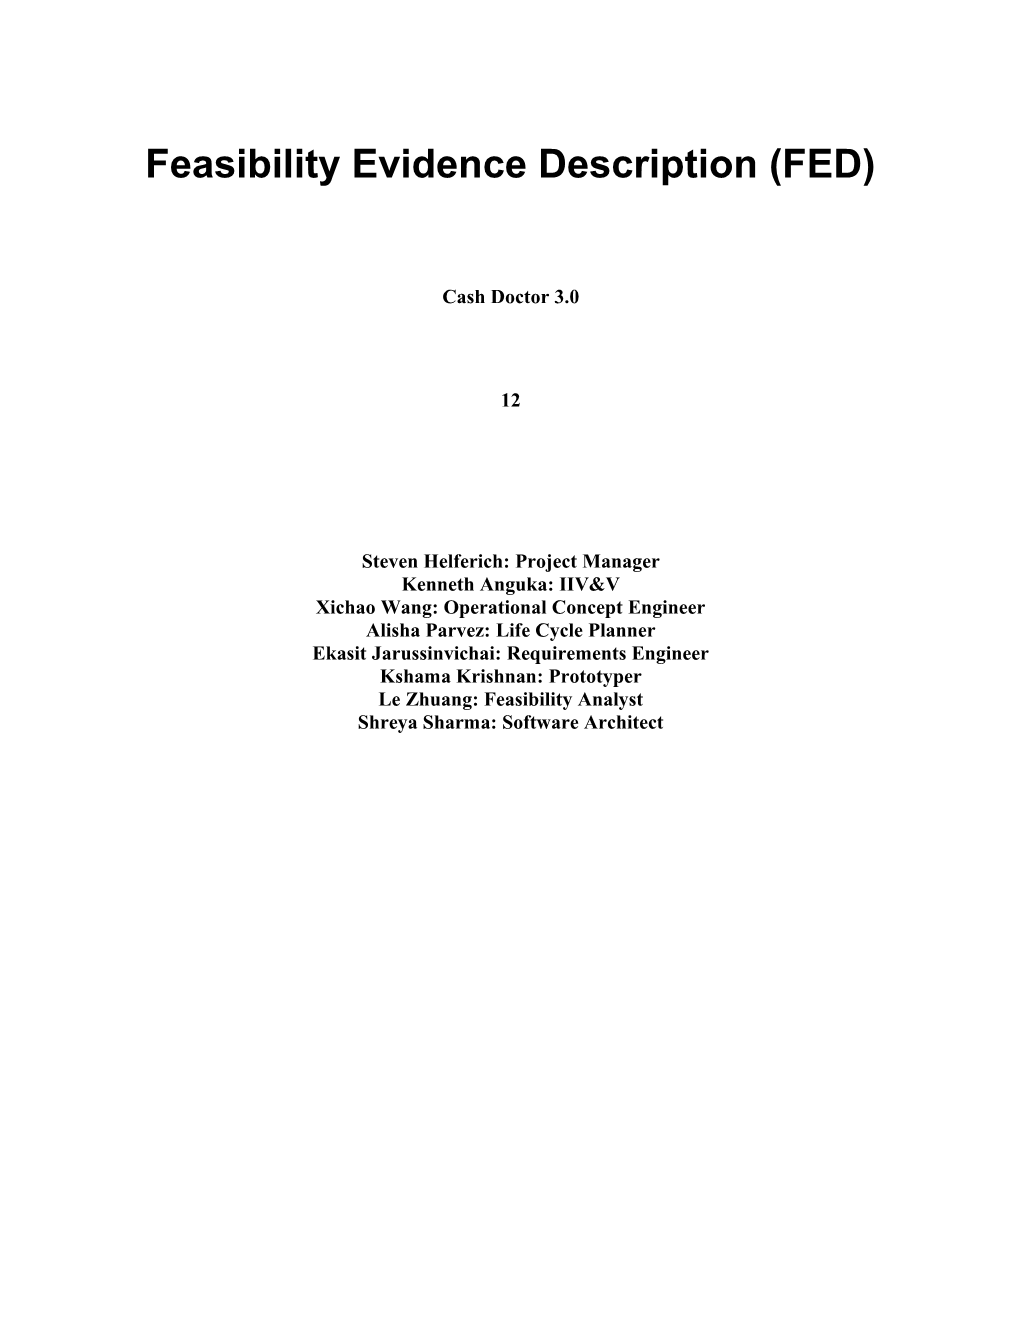 Feasibility Rationale Description (FRD) s1